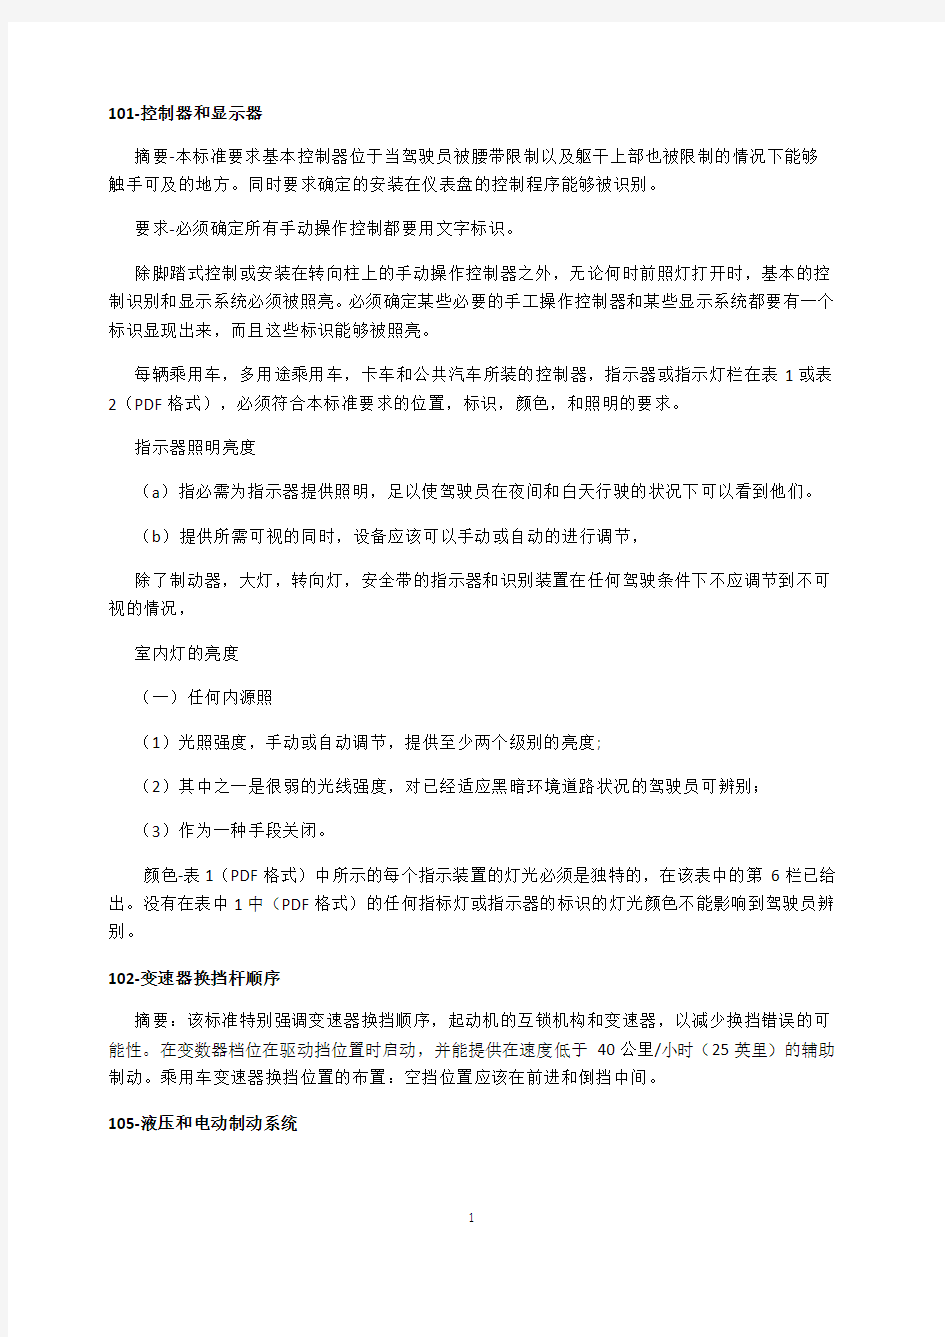 美国汽车安全技术法规(FMVSS)中文版